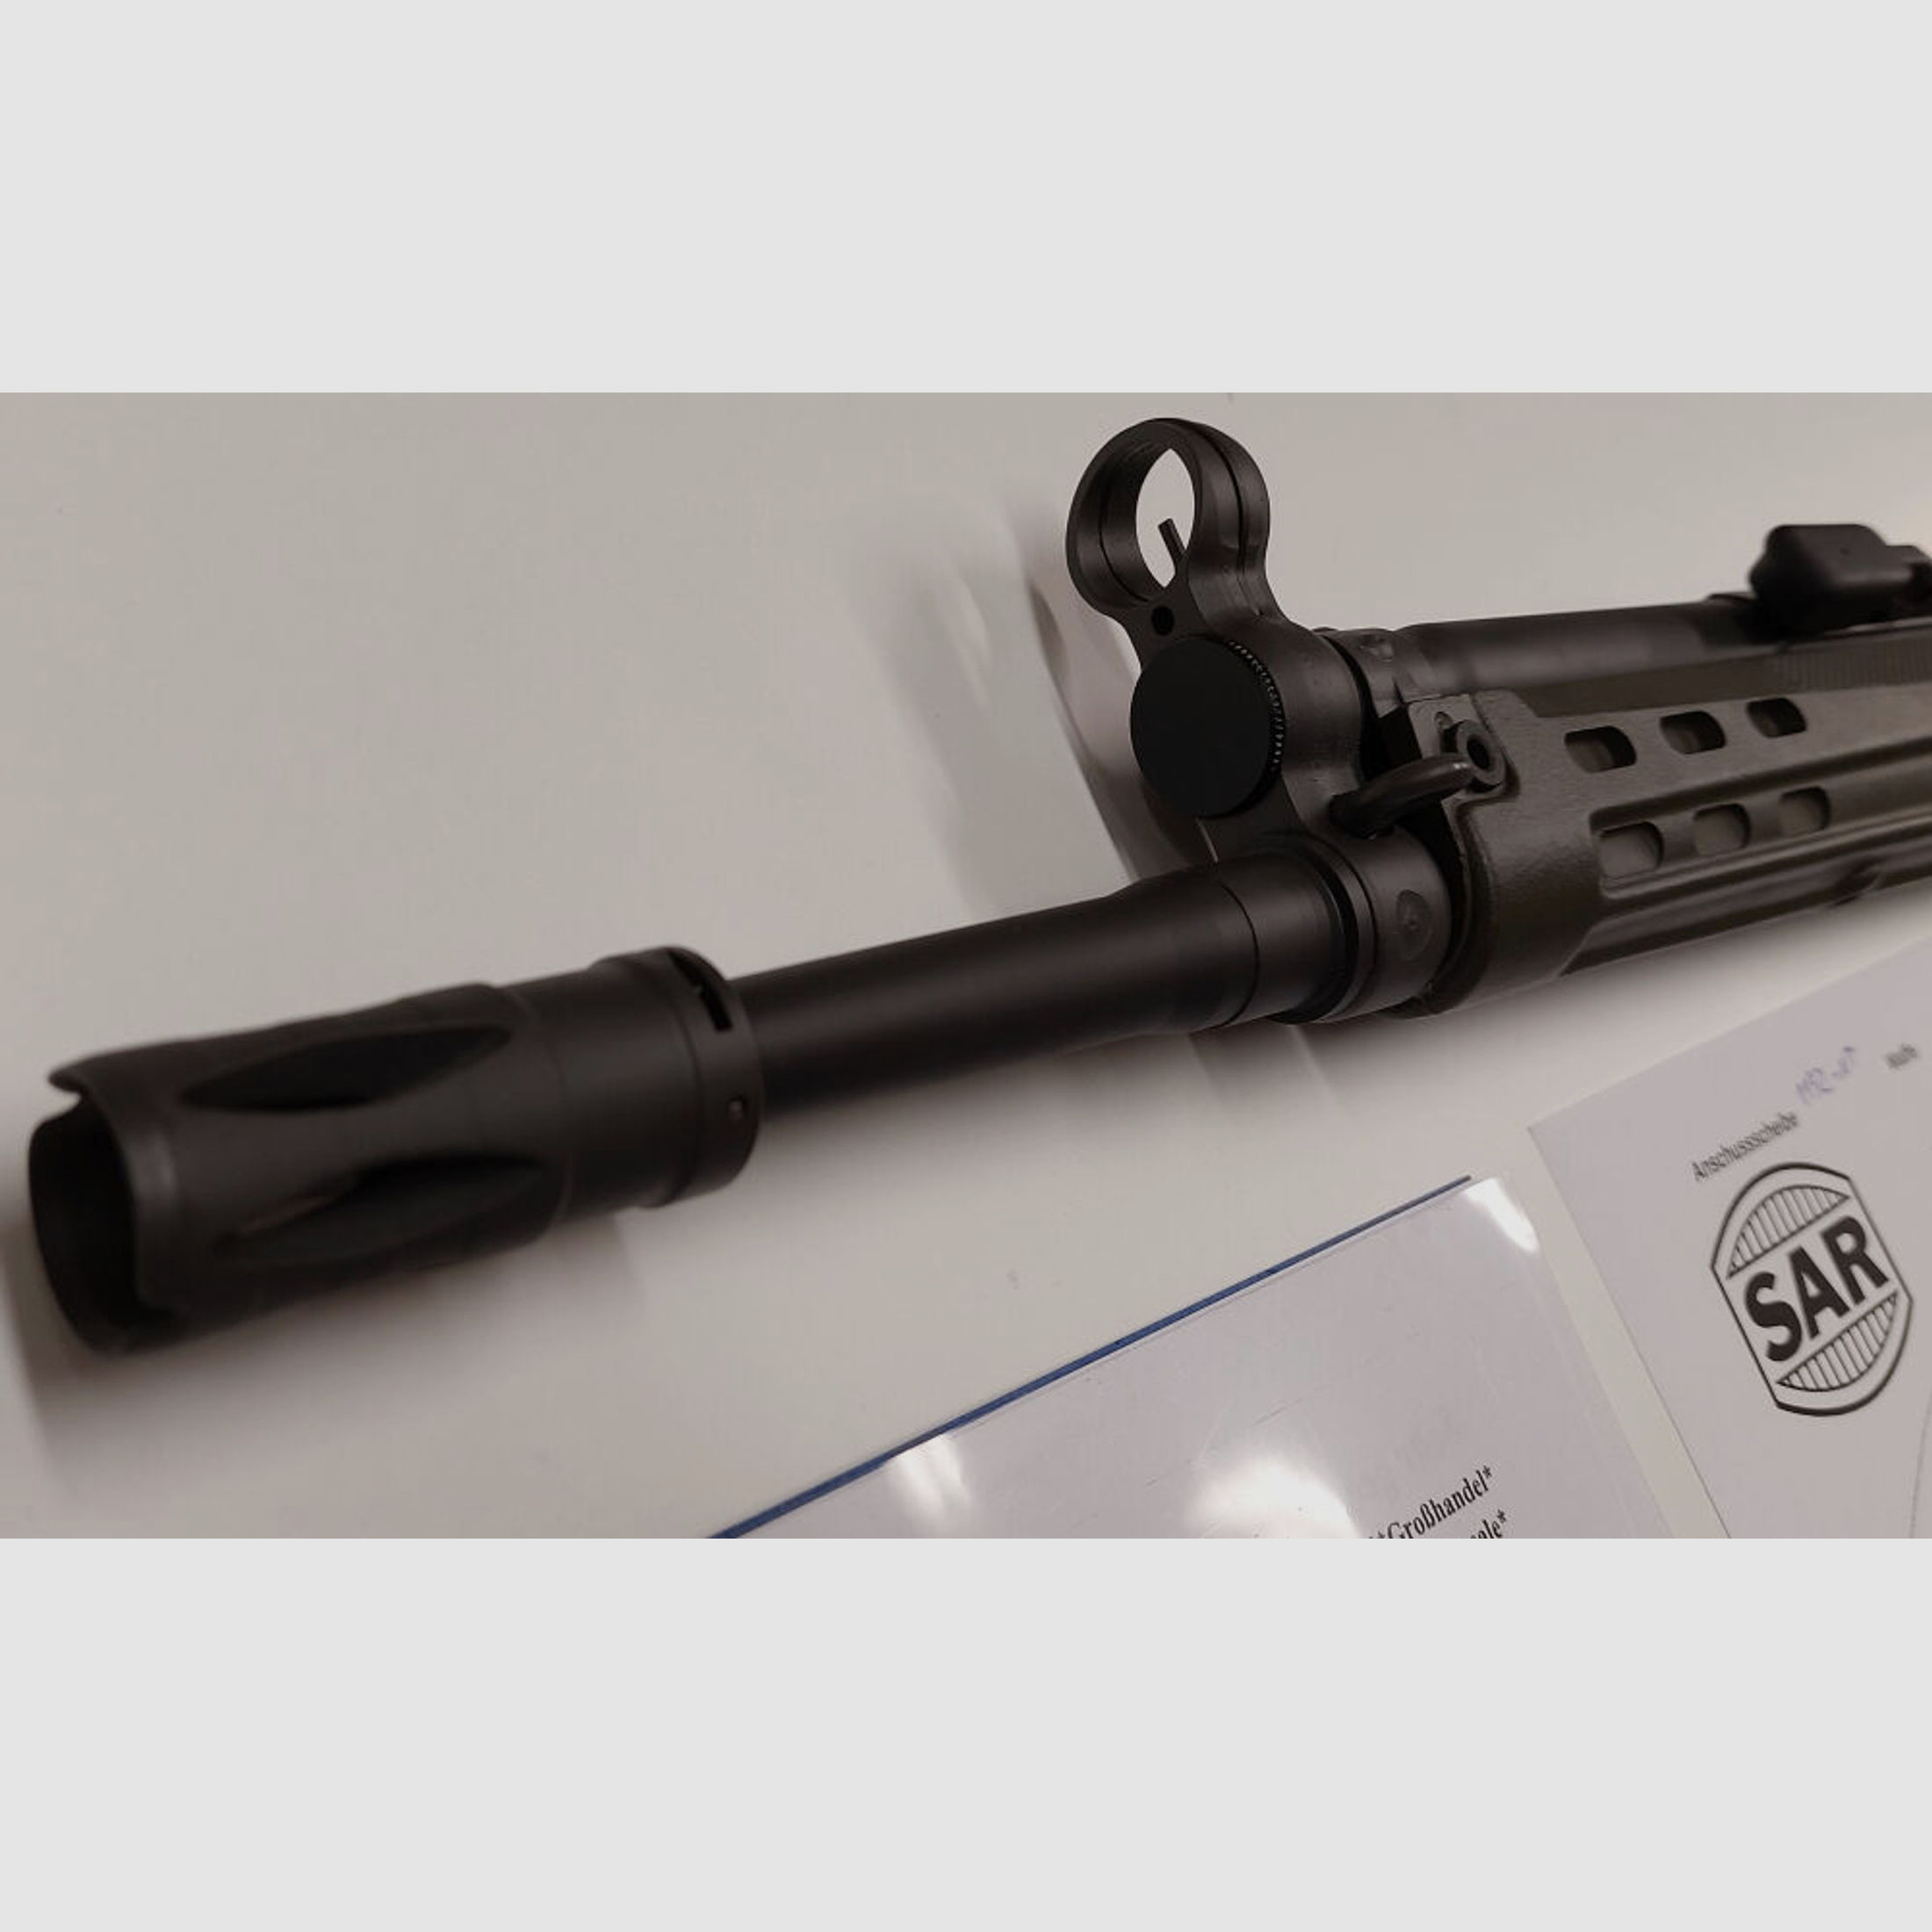 Schwaben Arms GmbH	 Selbstladebüchse SAR M41 SPORTMATCH MF3 G3KT Kaliber 308win. - MADE IN GERMANY - ähnlich HK41/G3